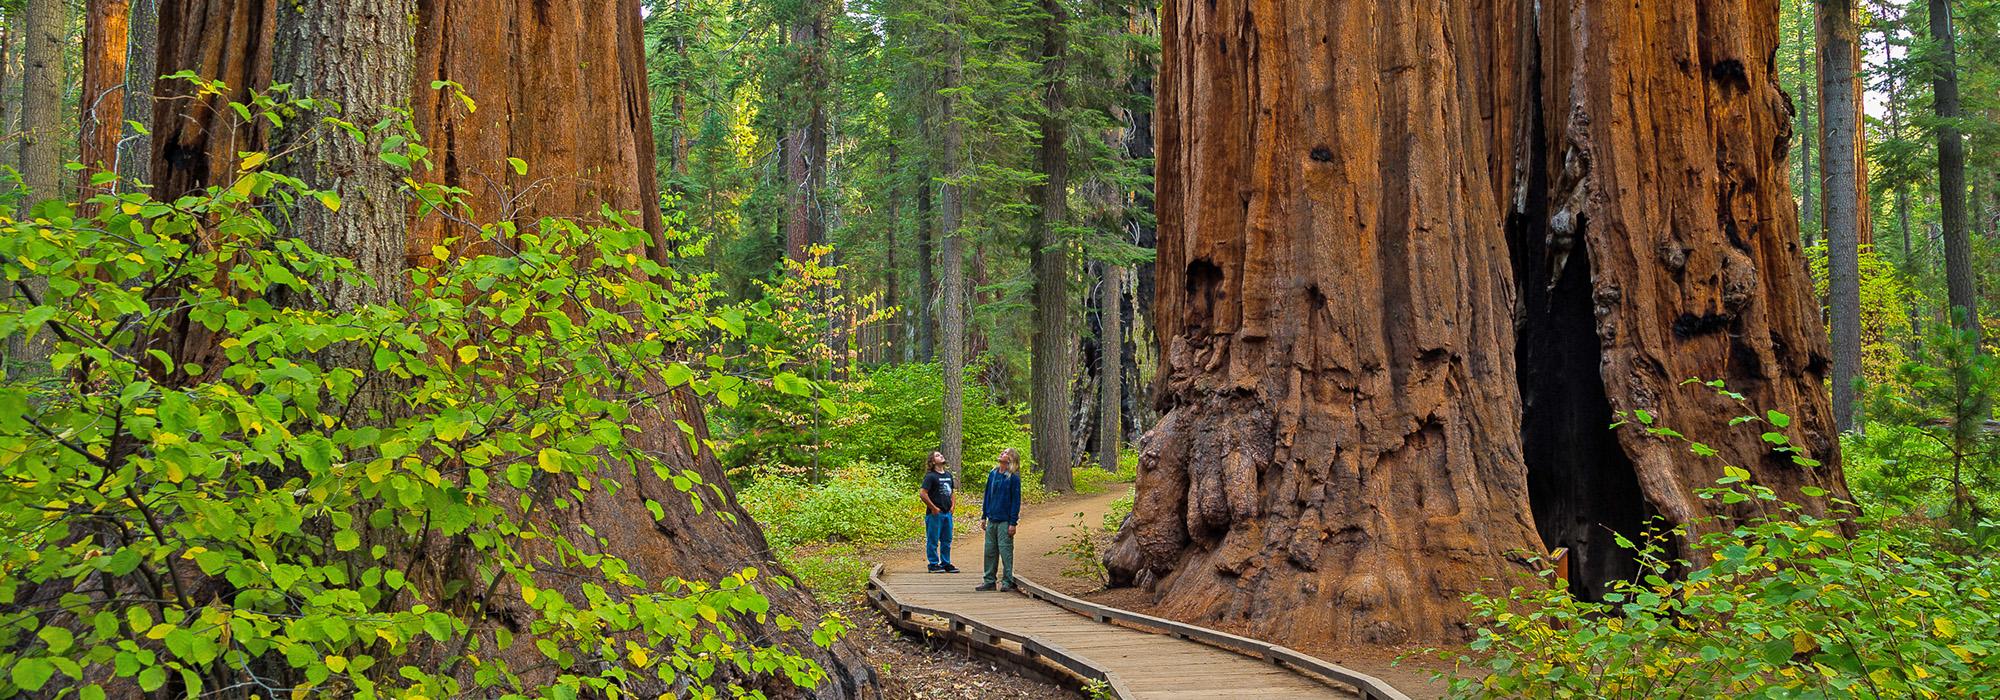 Calaveras North Grove, Giant Sequoia Range, CA